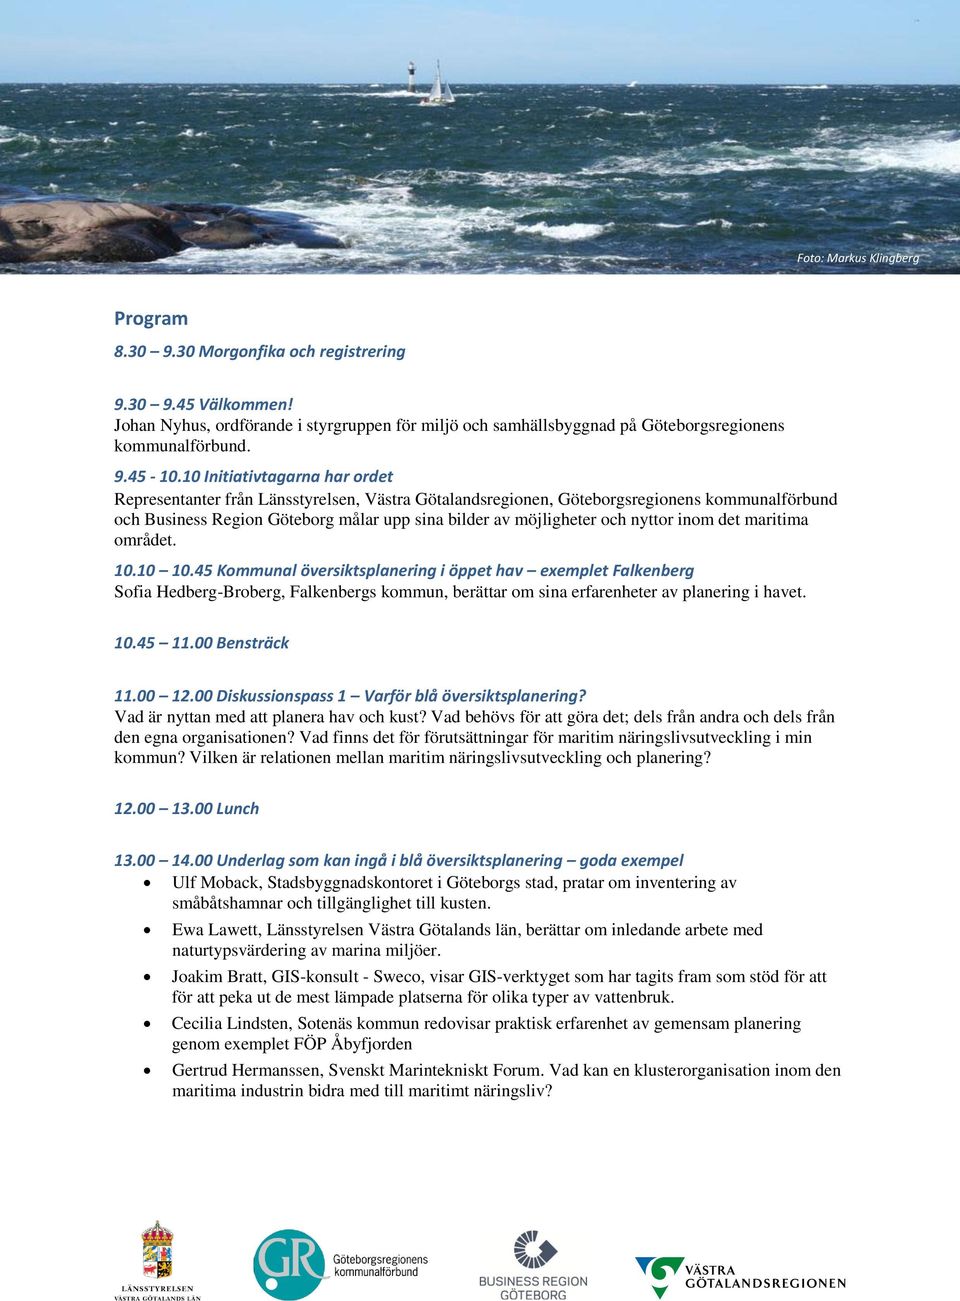 nyttor inom det maritima området. 10.10 10.45 Kommunal översiktsplanering i öppet hav exemplet Falkenberg Sofia Hedberg-Broberg, Falkenbergs kommun, berättar om sina erfarenheter av planering i havet.